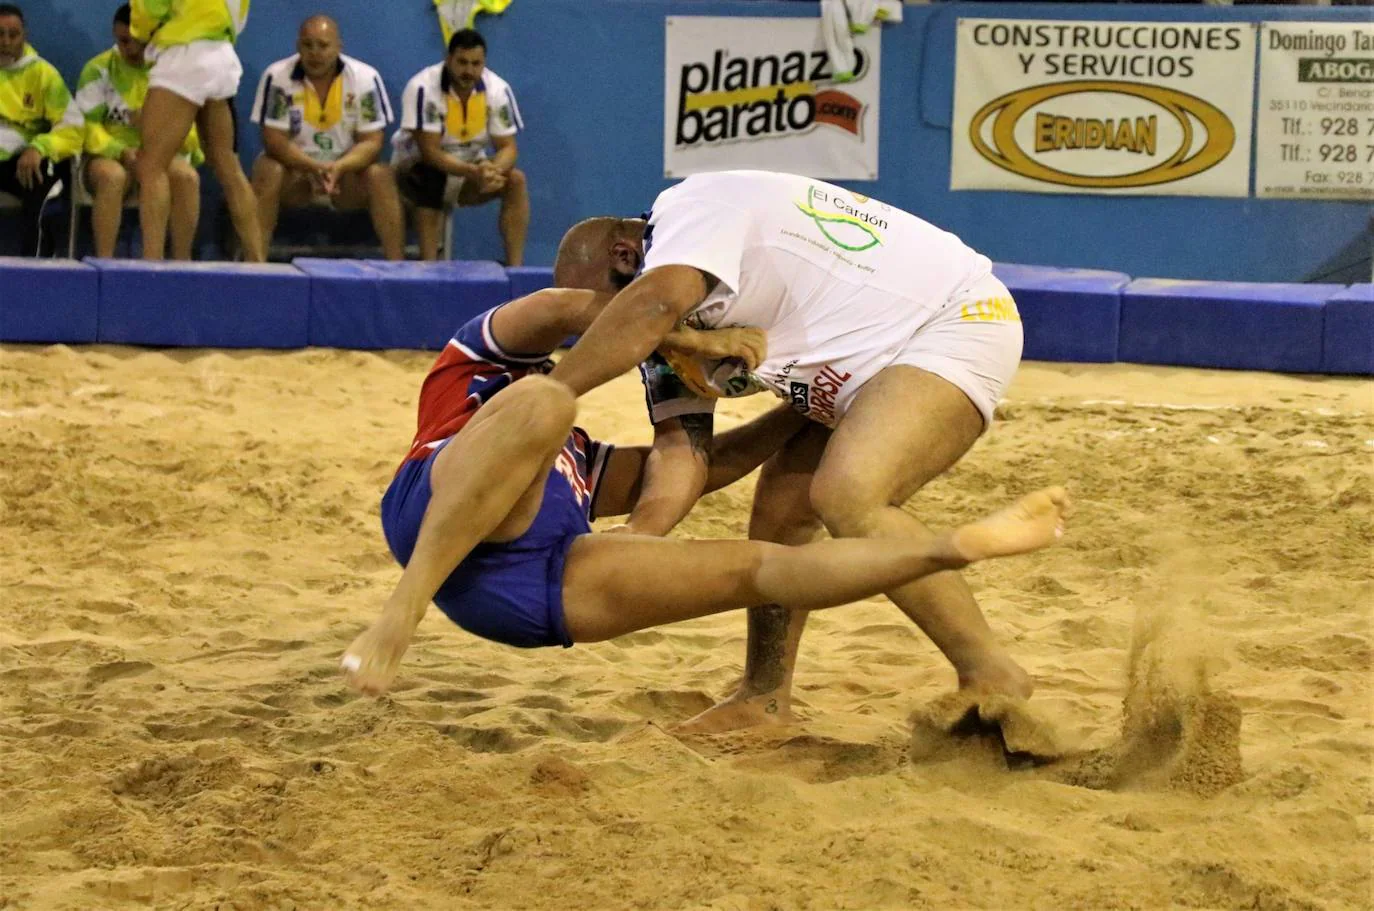 El deporte popular se pondrá patas arriba con La Palma el 20 de noviembre en Vecindario